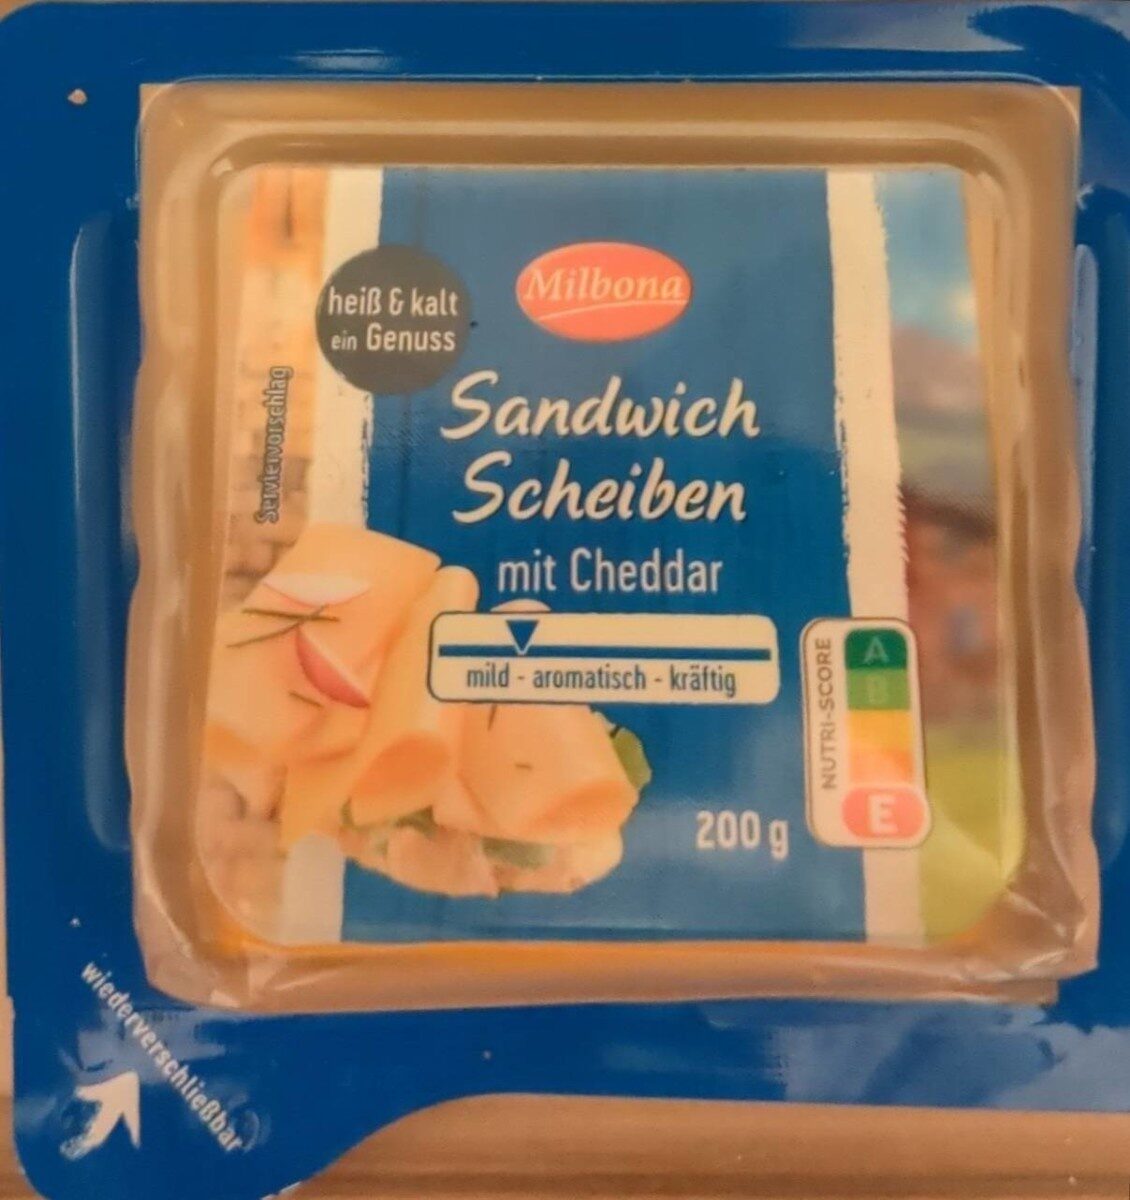 Schreiben - Sandwich Cheddar mit Milbona 1pcs -